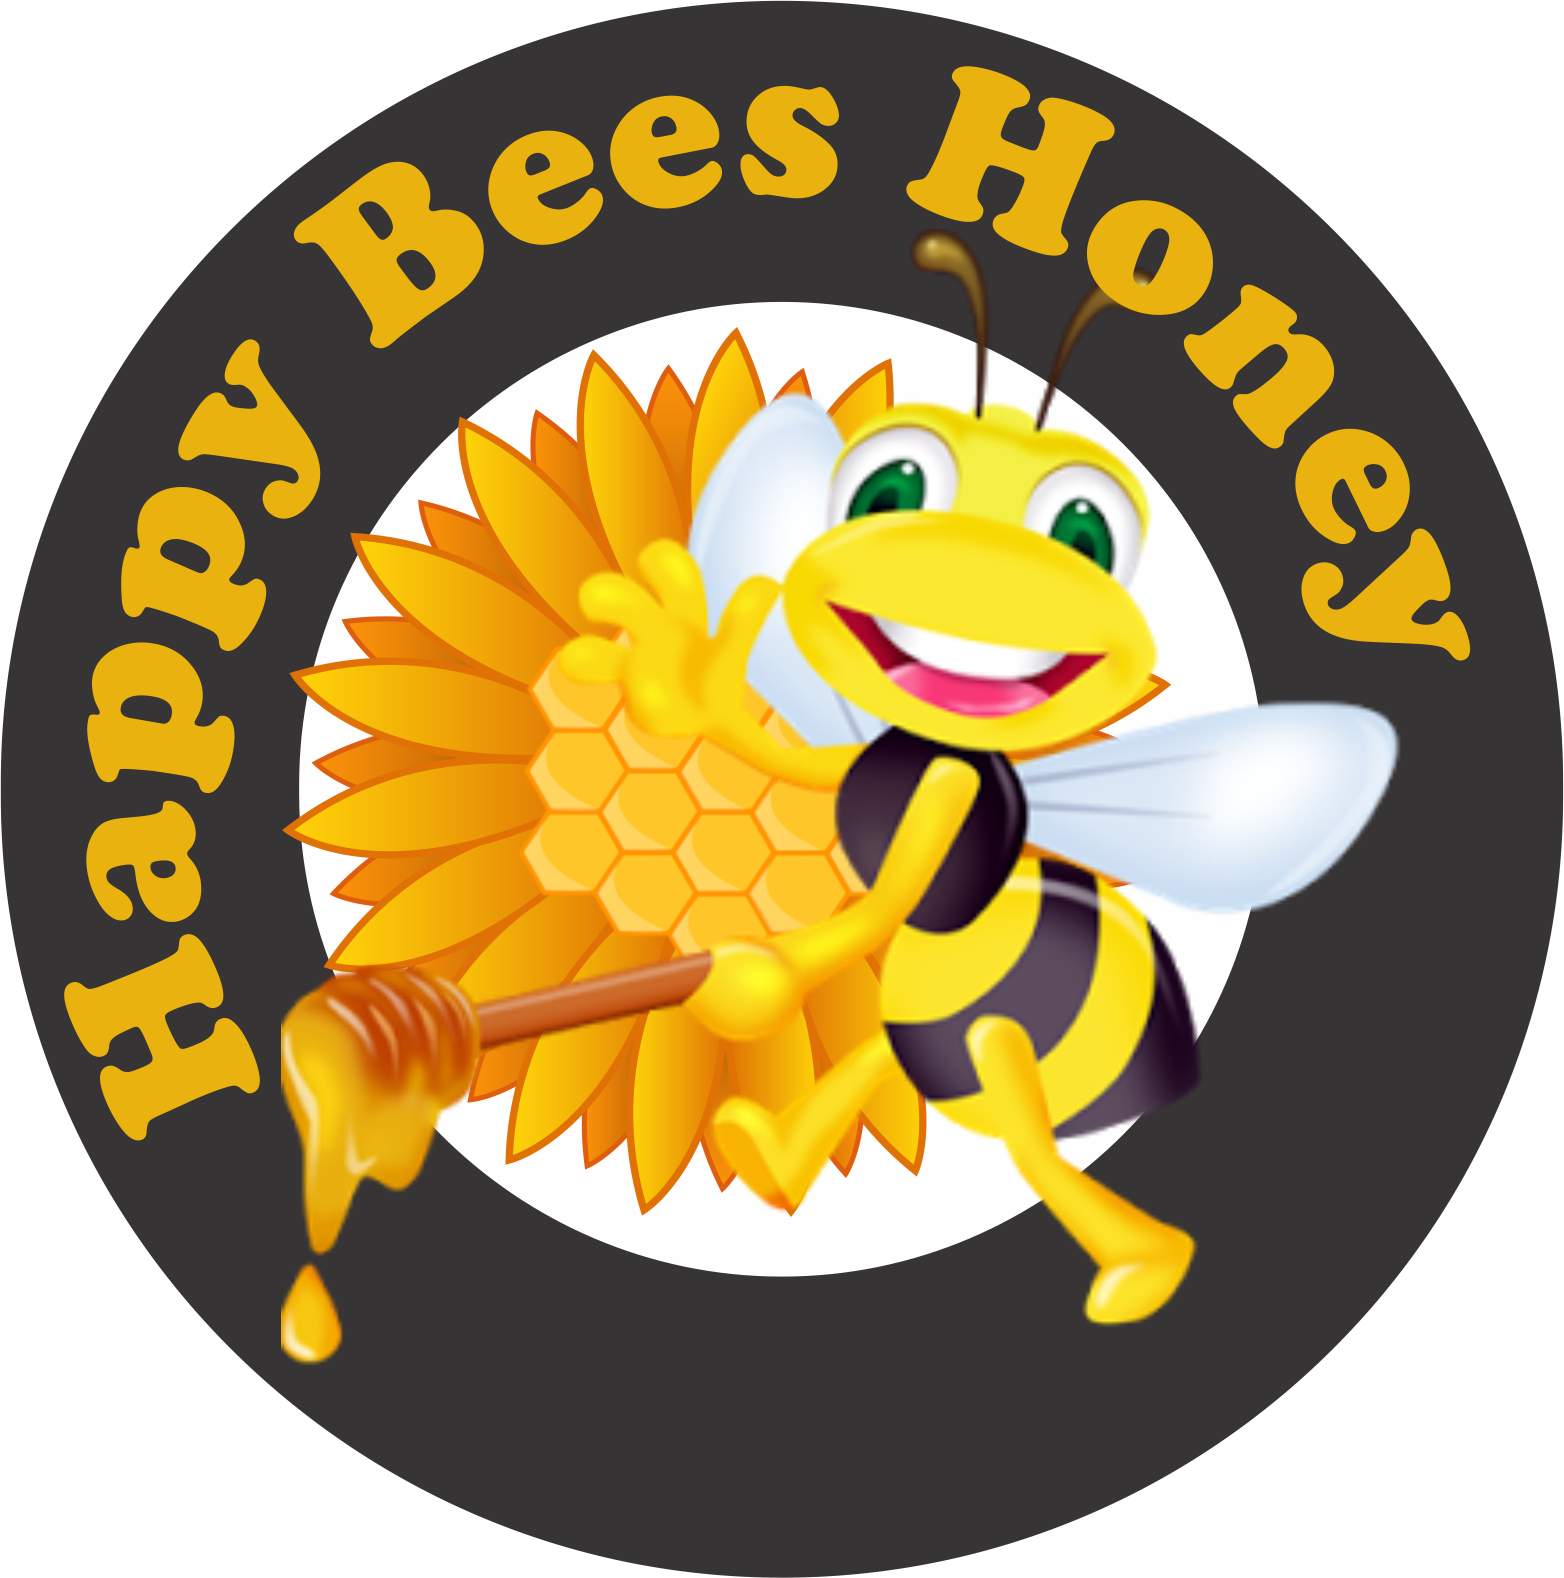 Happybeeshoney Png - Happy Bees Honey (1564x1578), Png Download